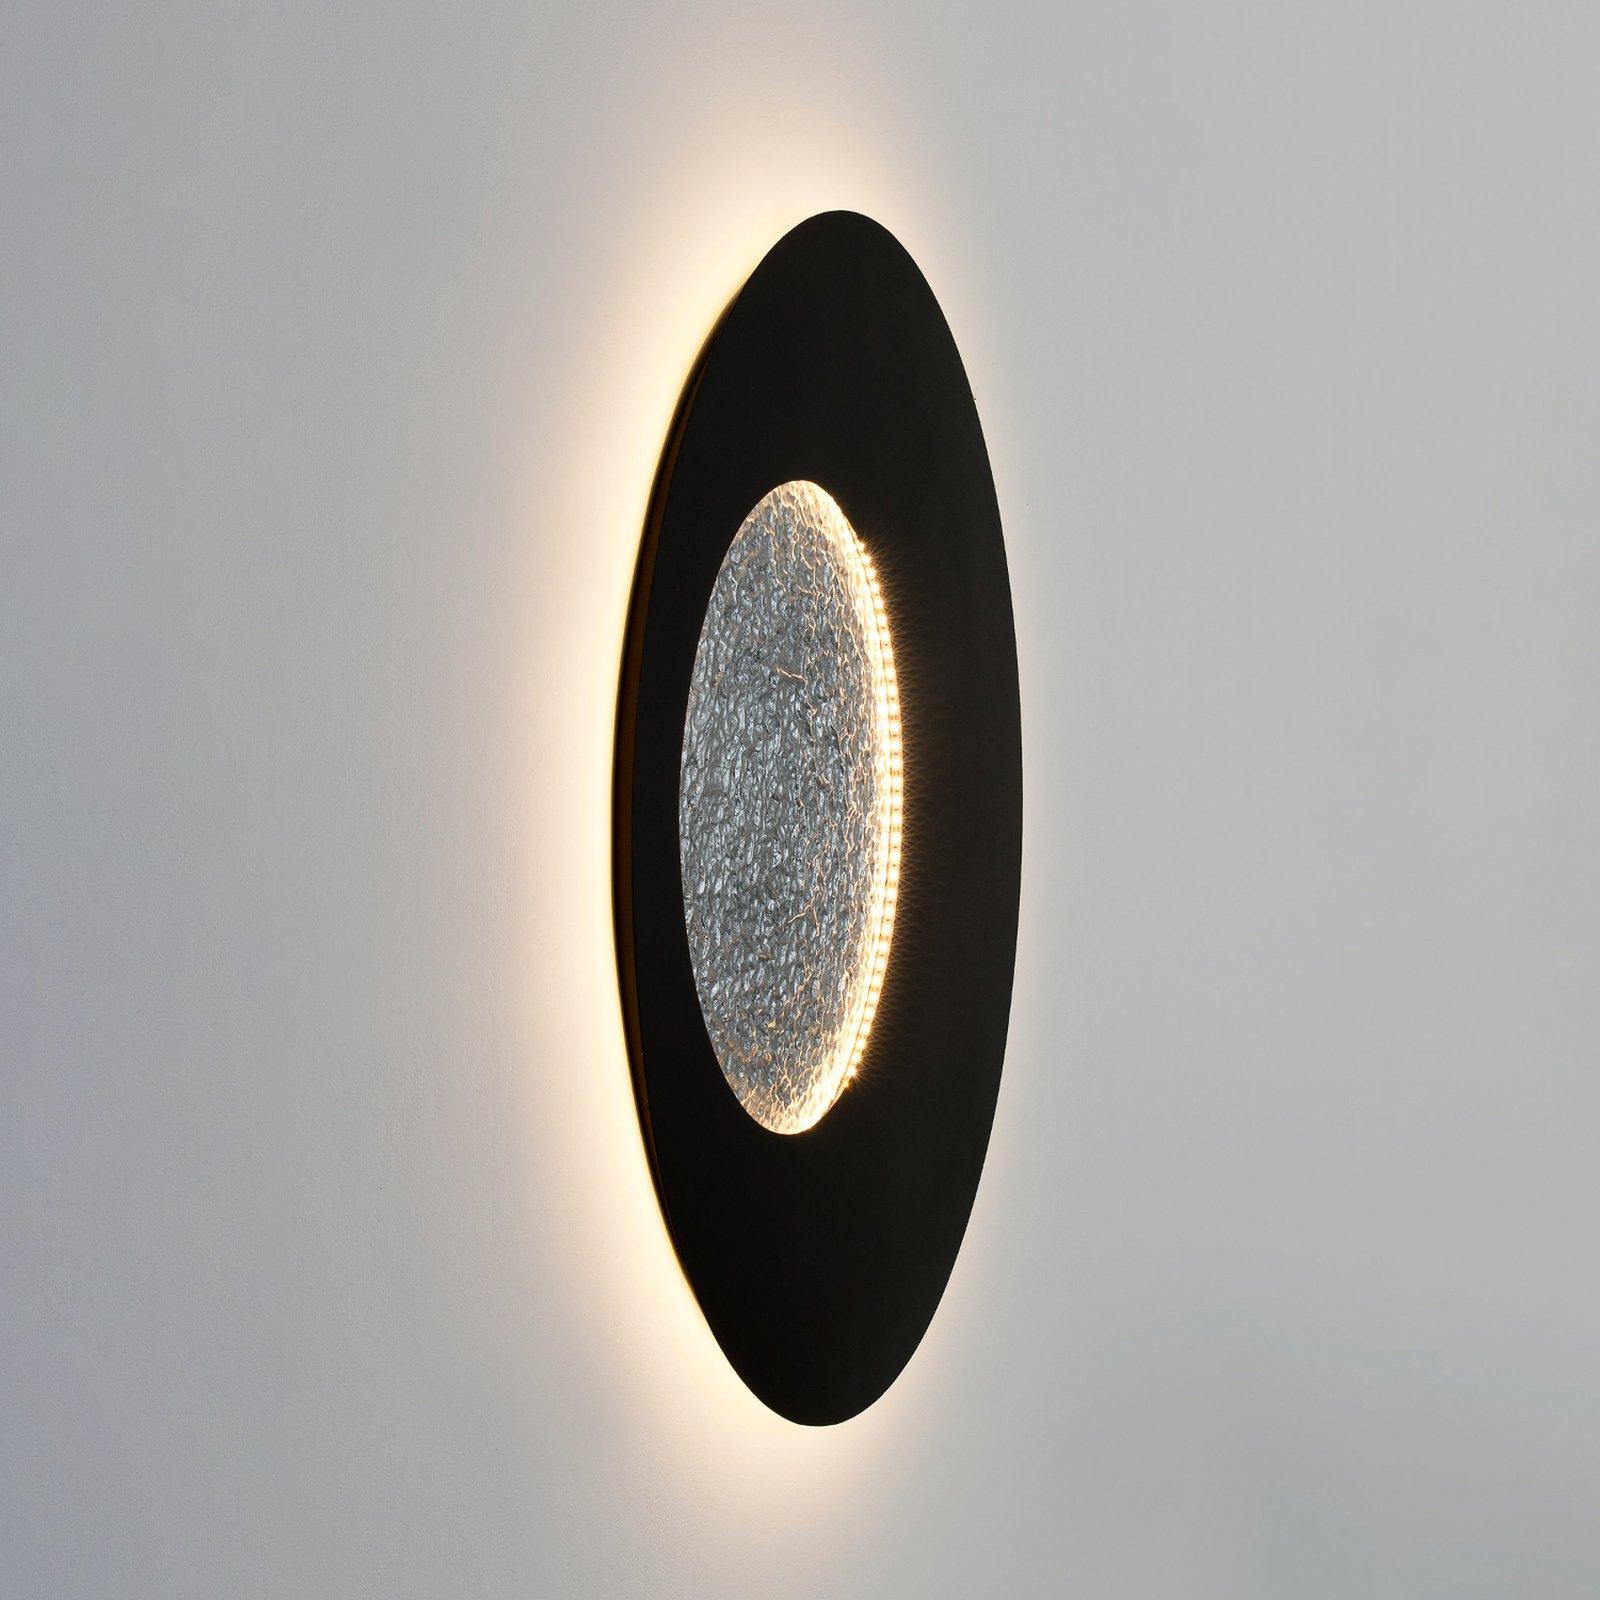 LED wall light Luna, brown-black/silver, Ø 120 cm, iron